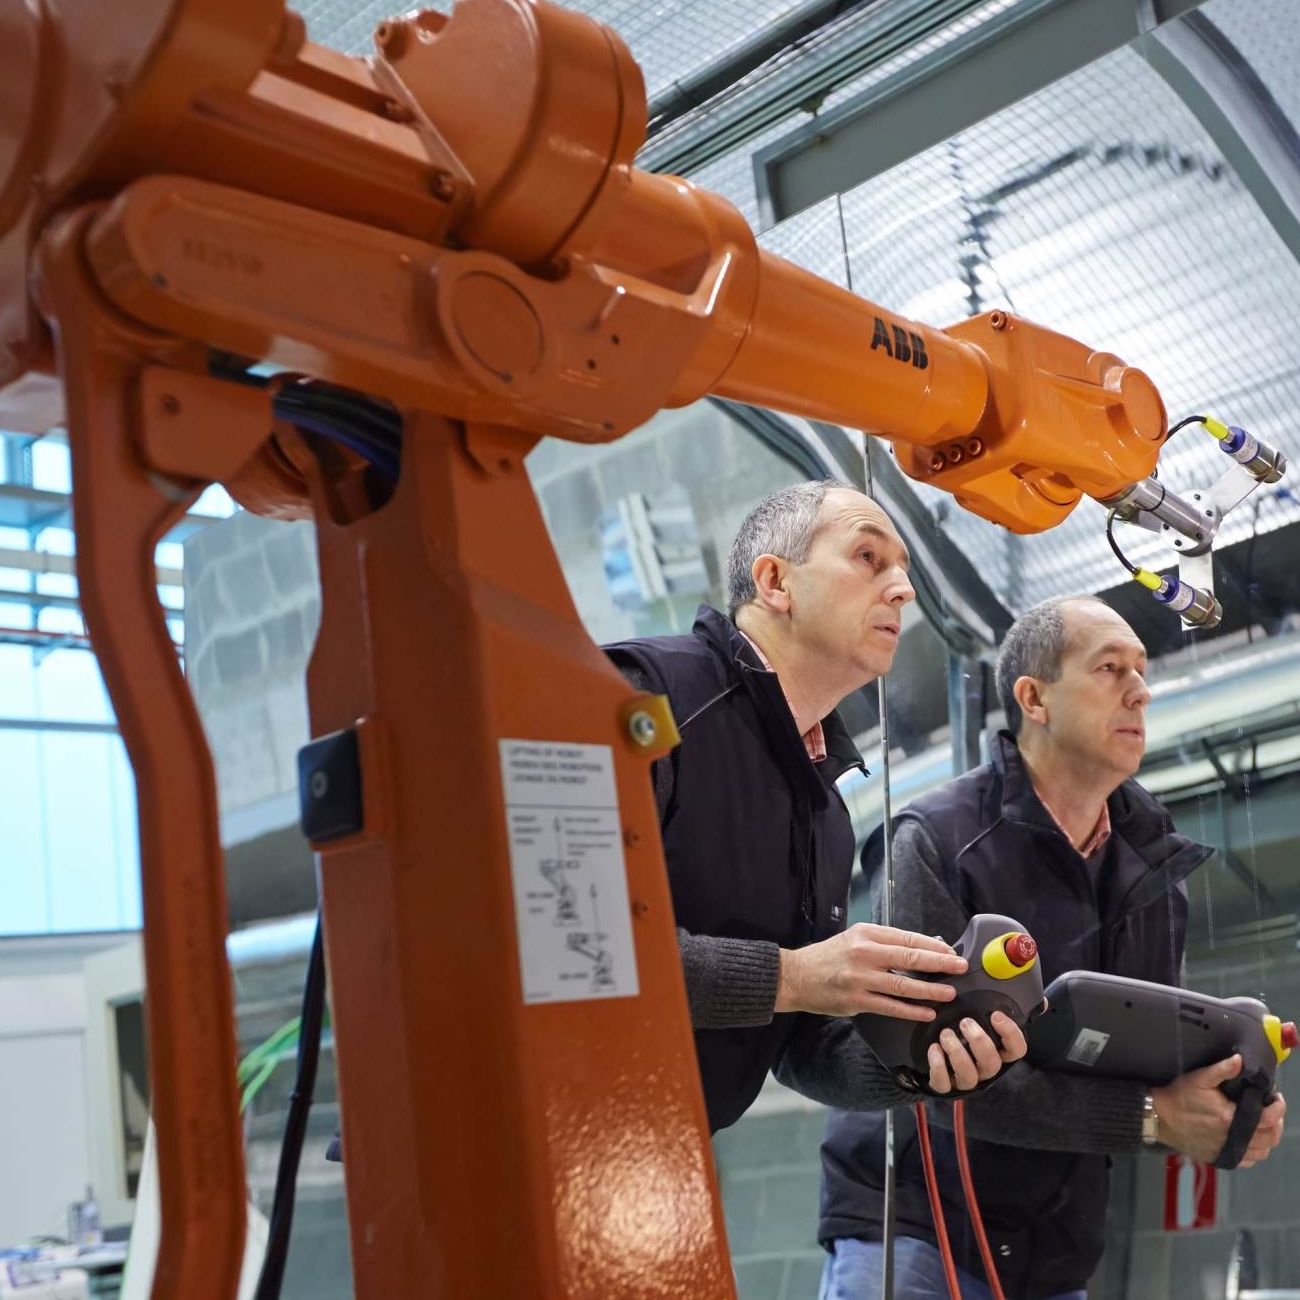 Technicians setting up an ABB industrial robot